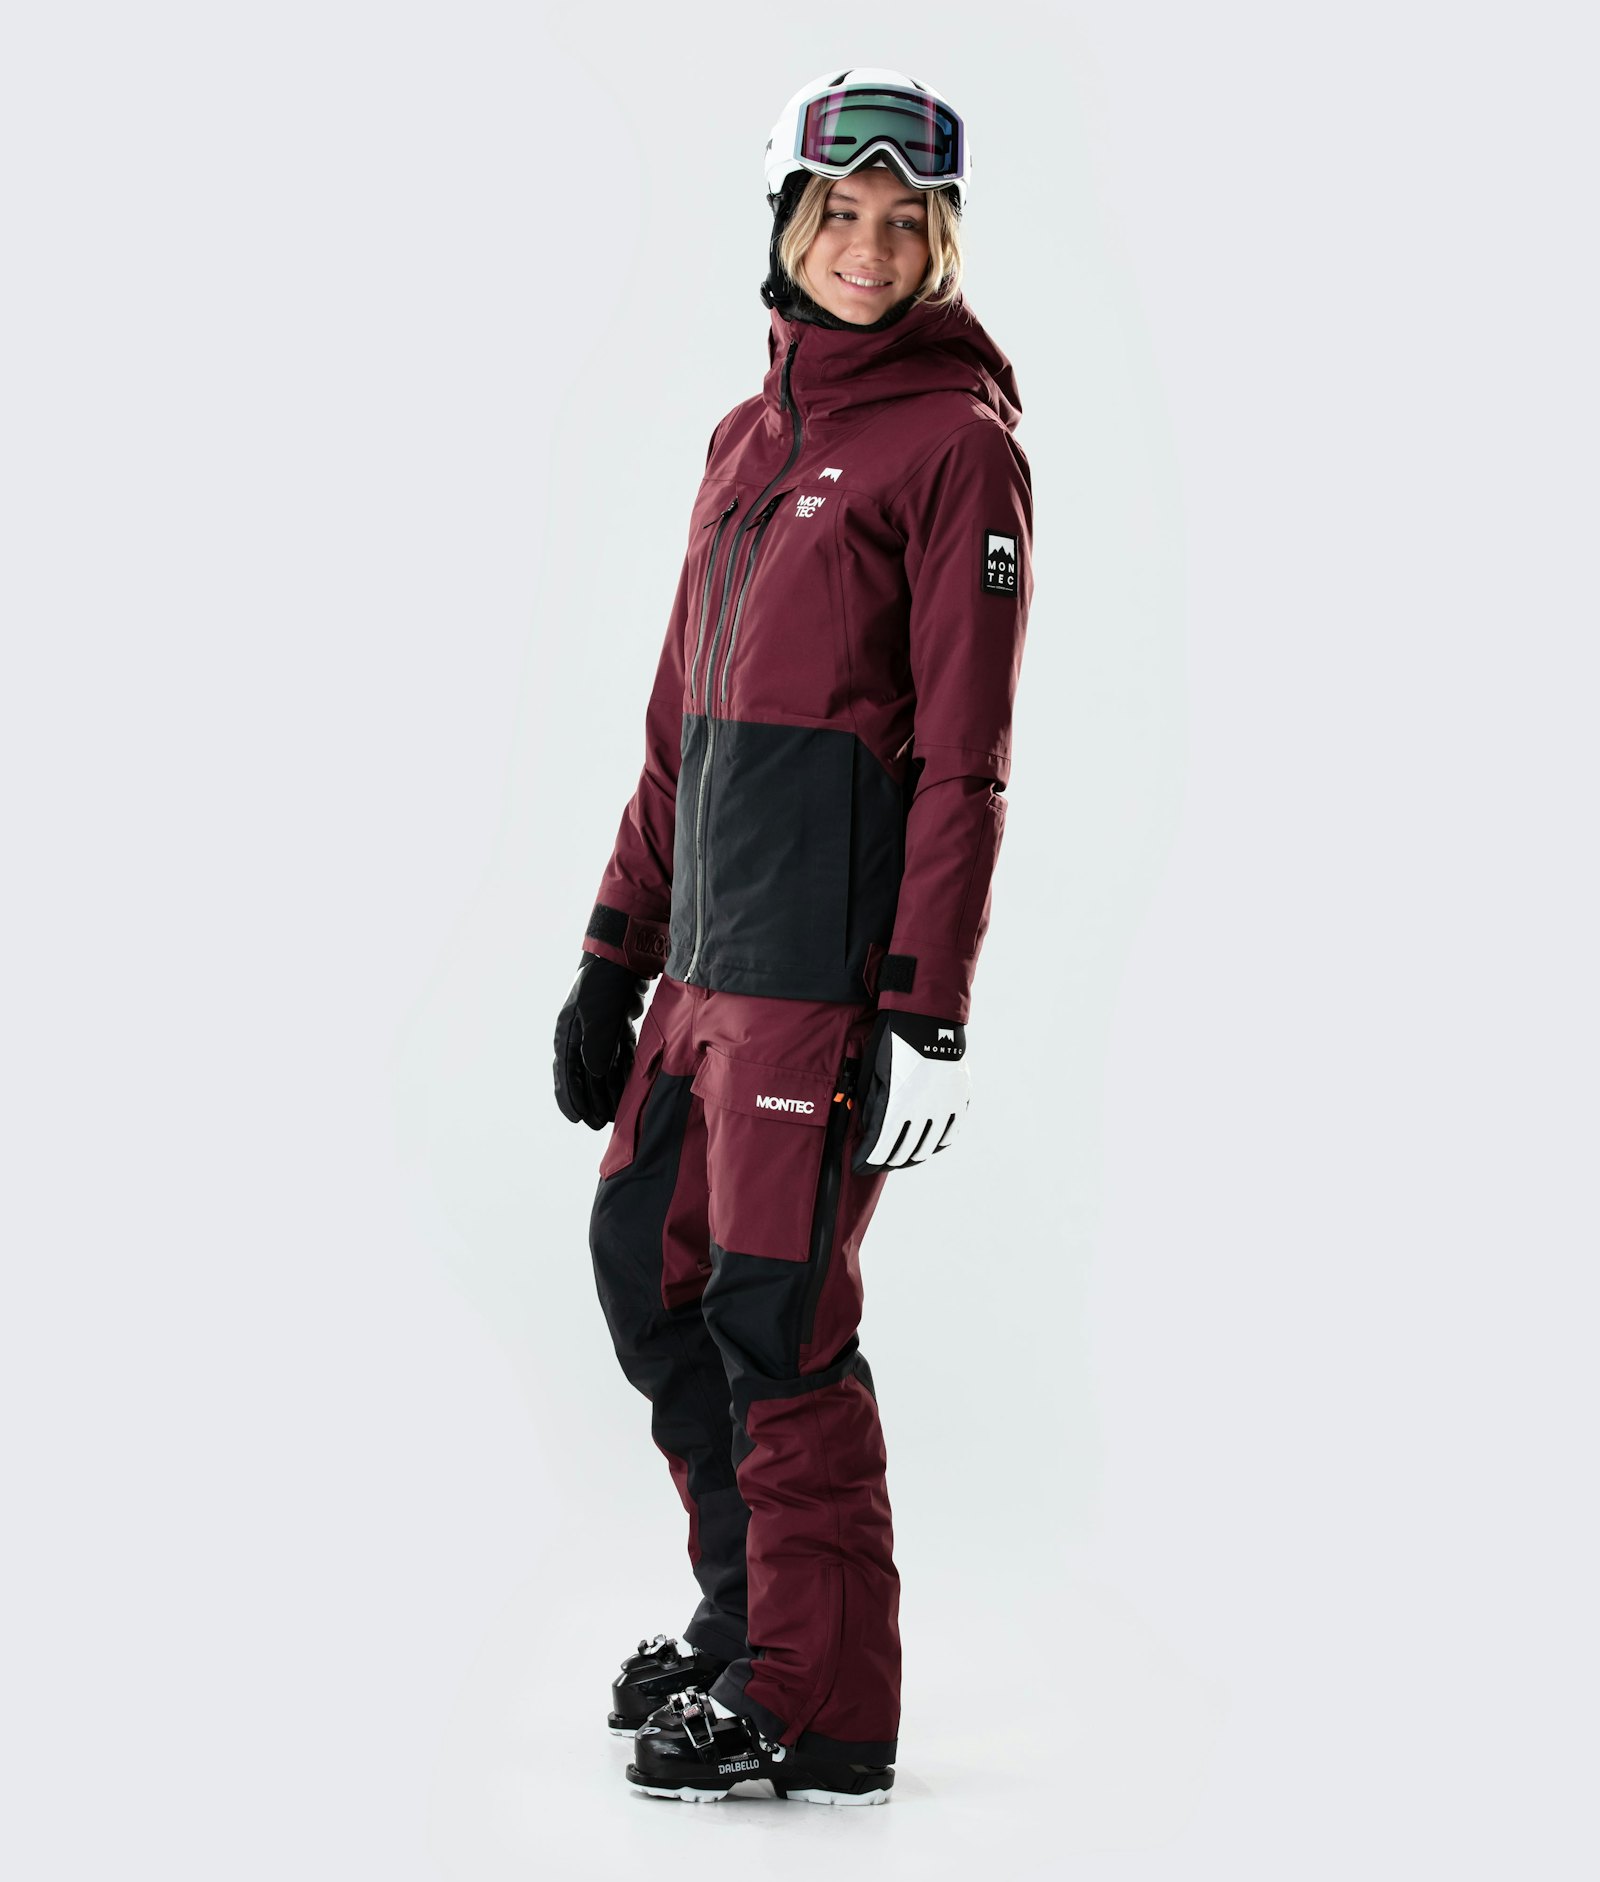 Moss W 2020 Ski Jacket Women Burgundy/Black